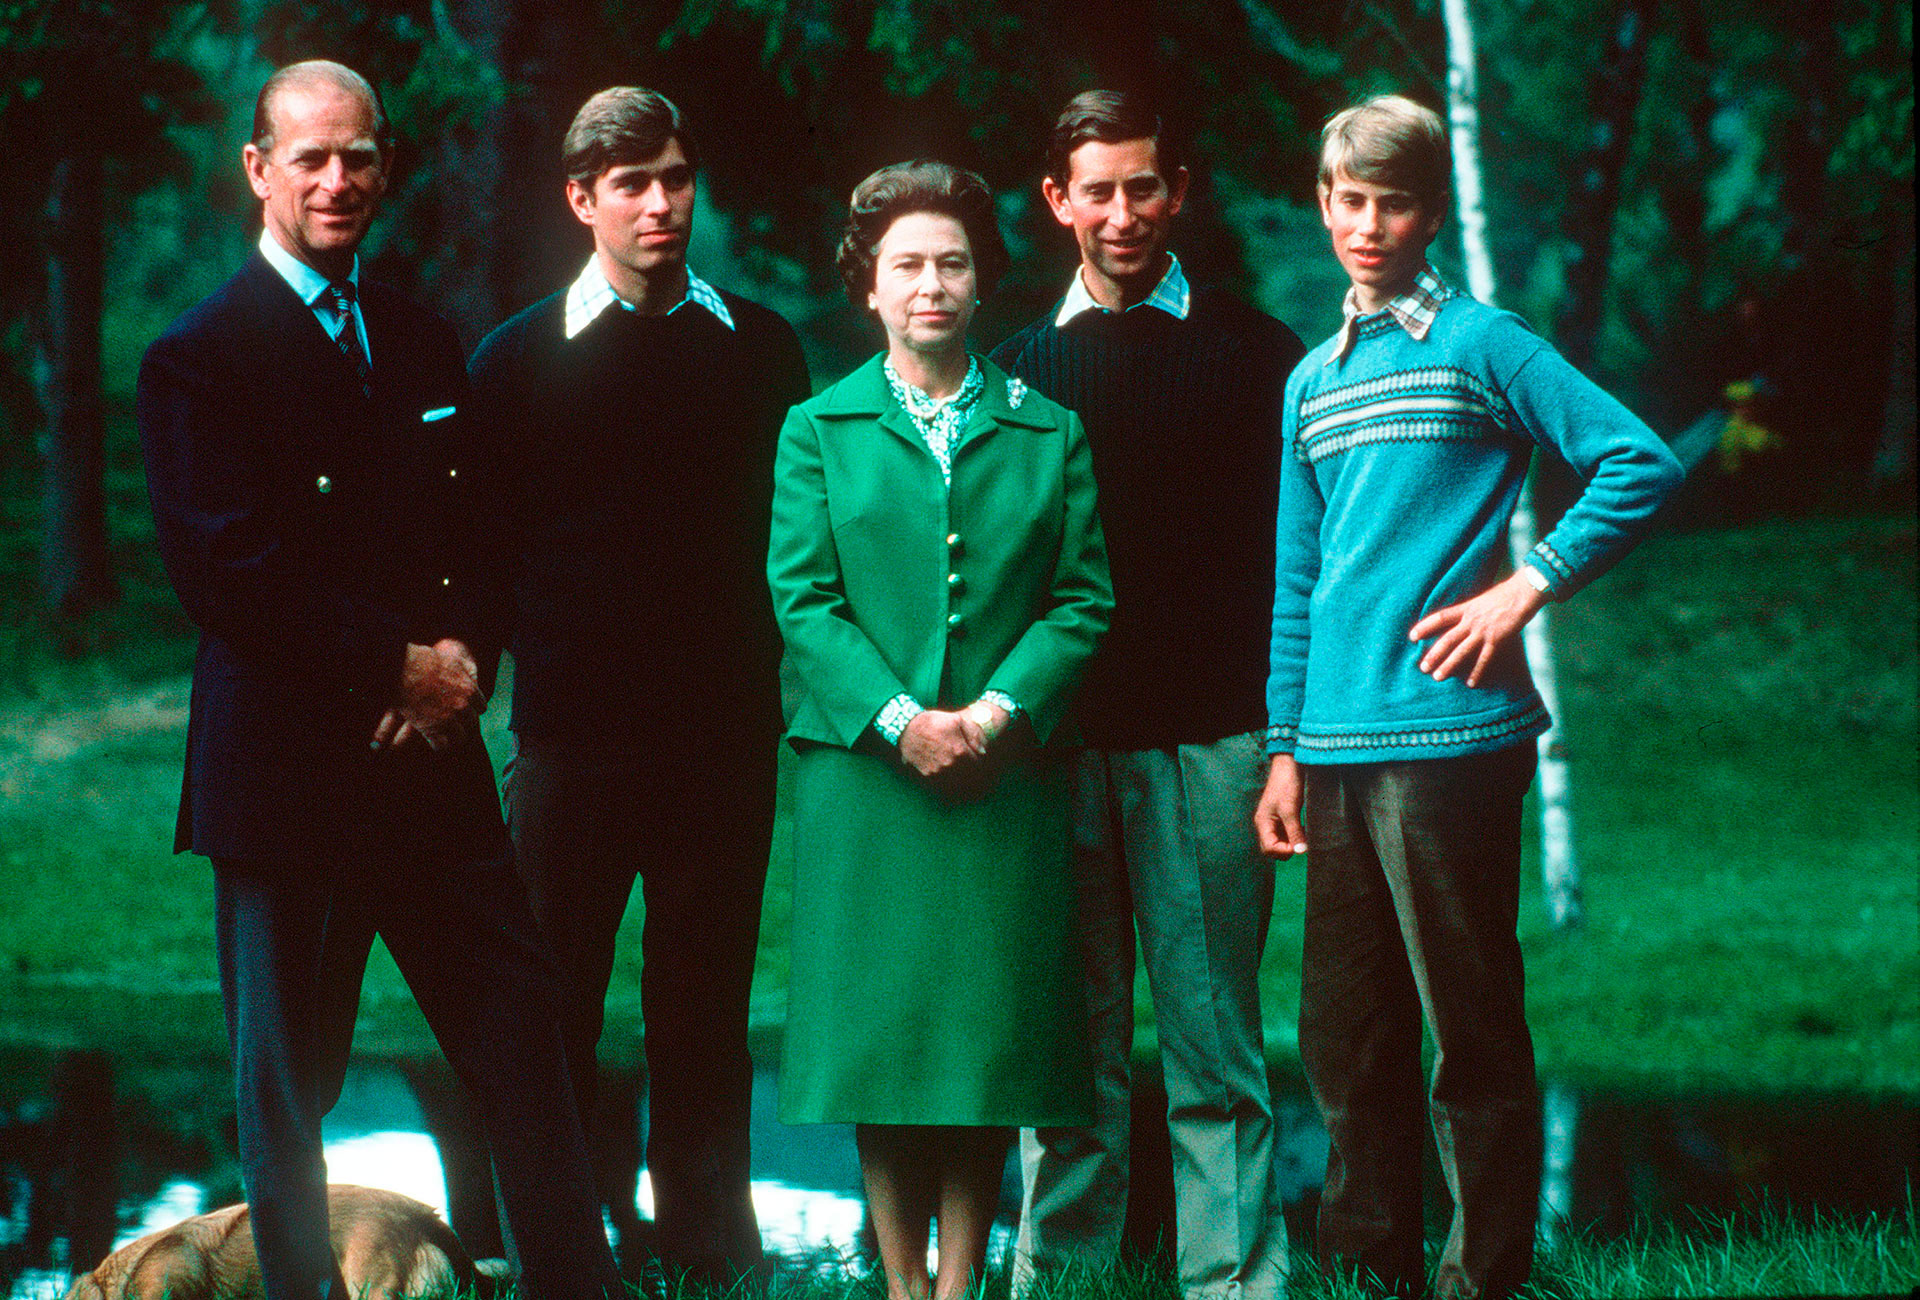 El Duque de Edimburgo, el Duque de York, la Reina Isabel II, el Príncipe Carlos y el príncipe Eduardo, Conde de Wessex (Anwar Hussein/WireImage)